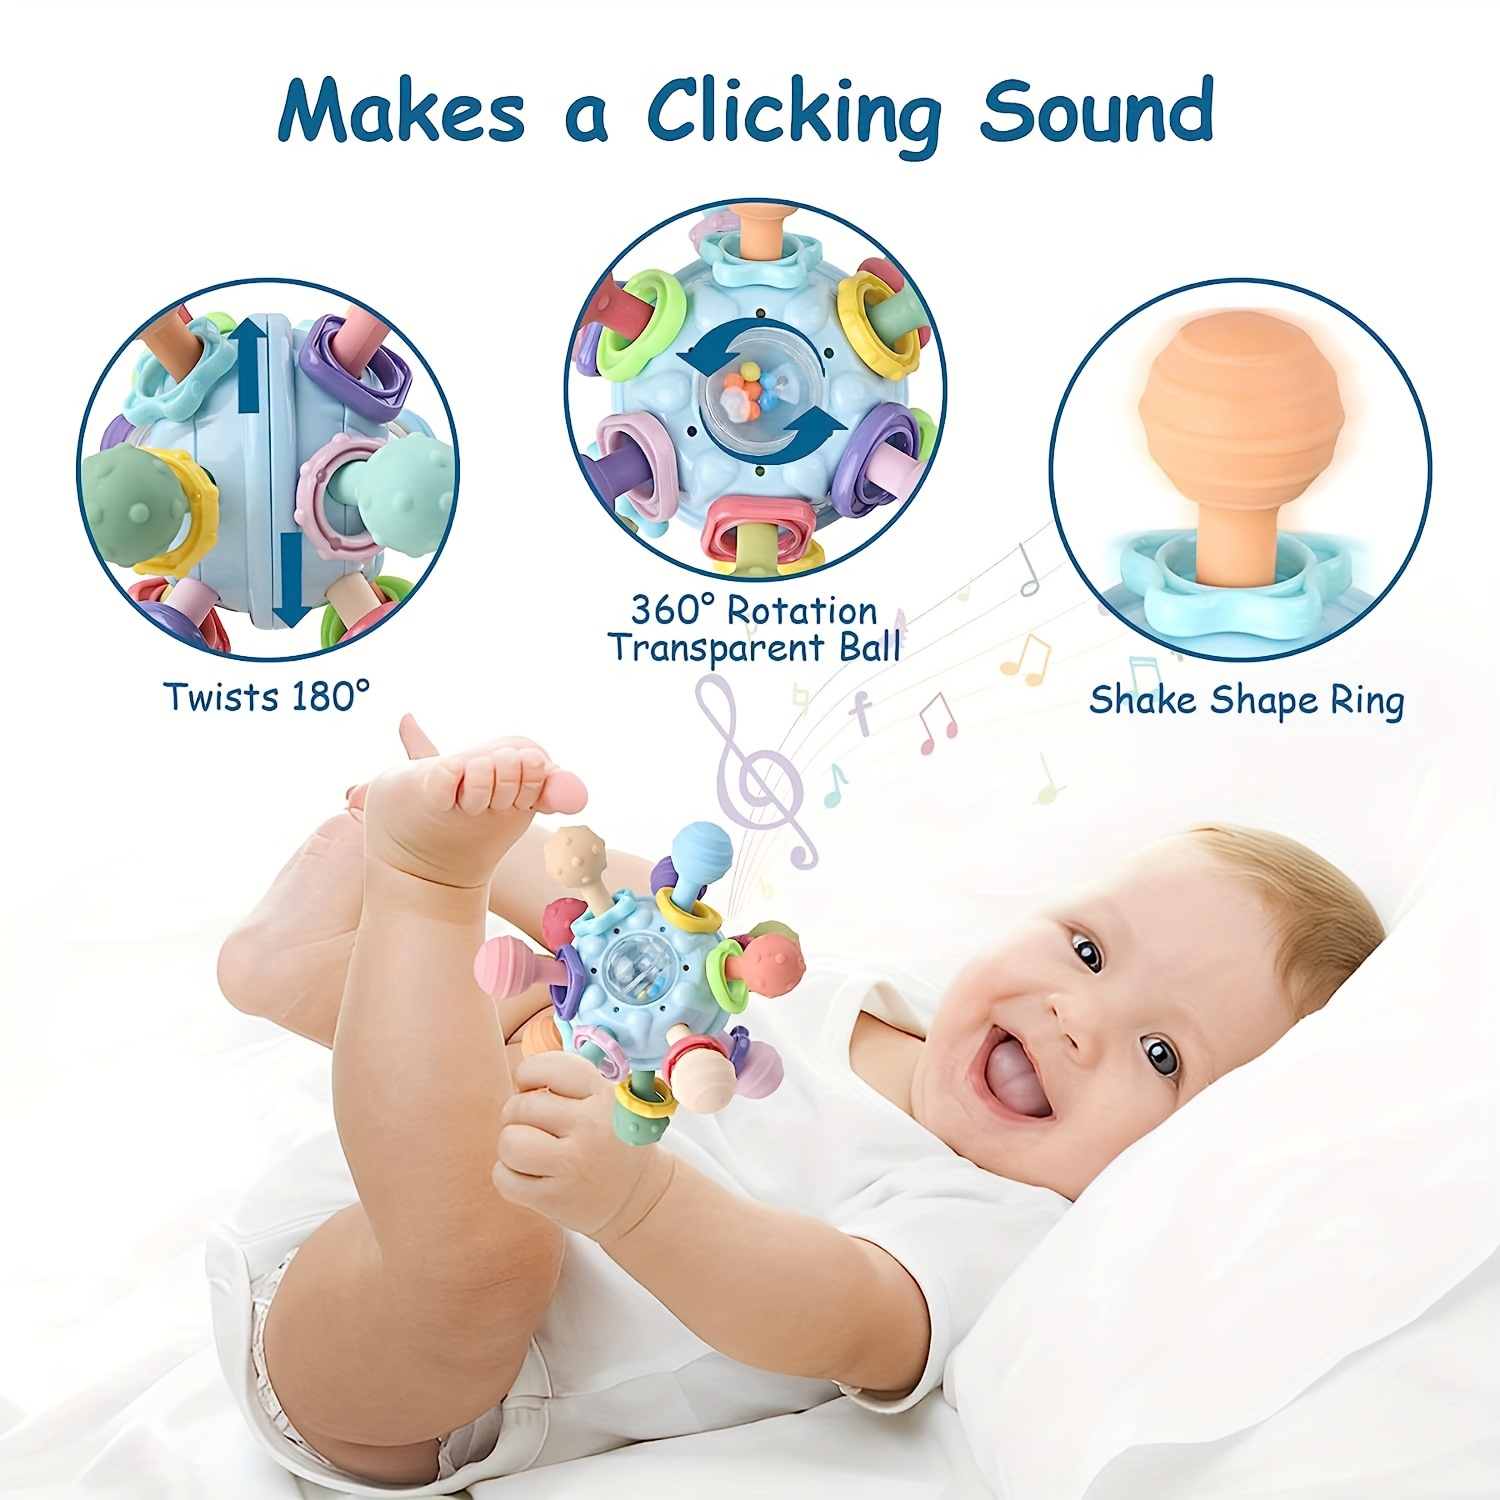 Juguetes Mordedores Para La Dentición Sensorial Del Bebé: Juguetes